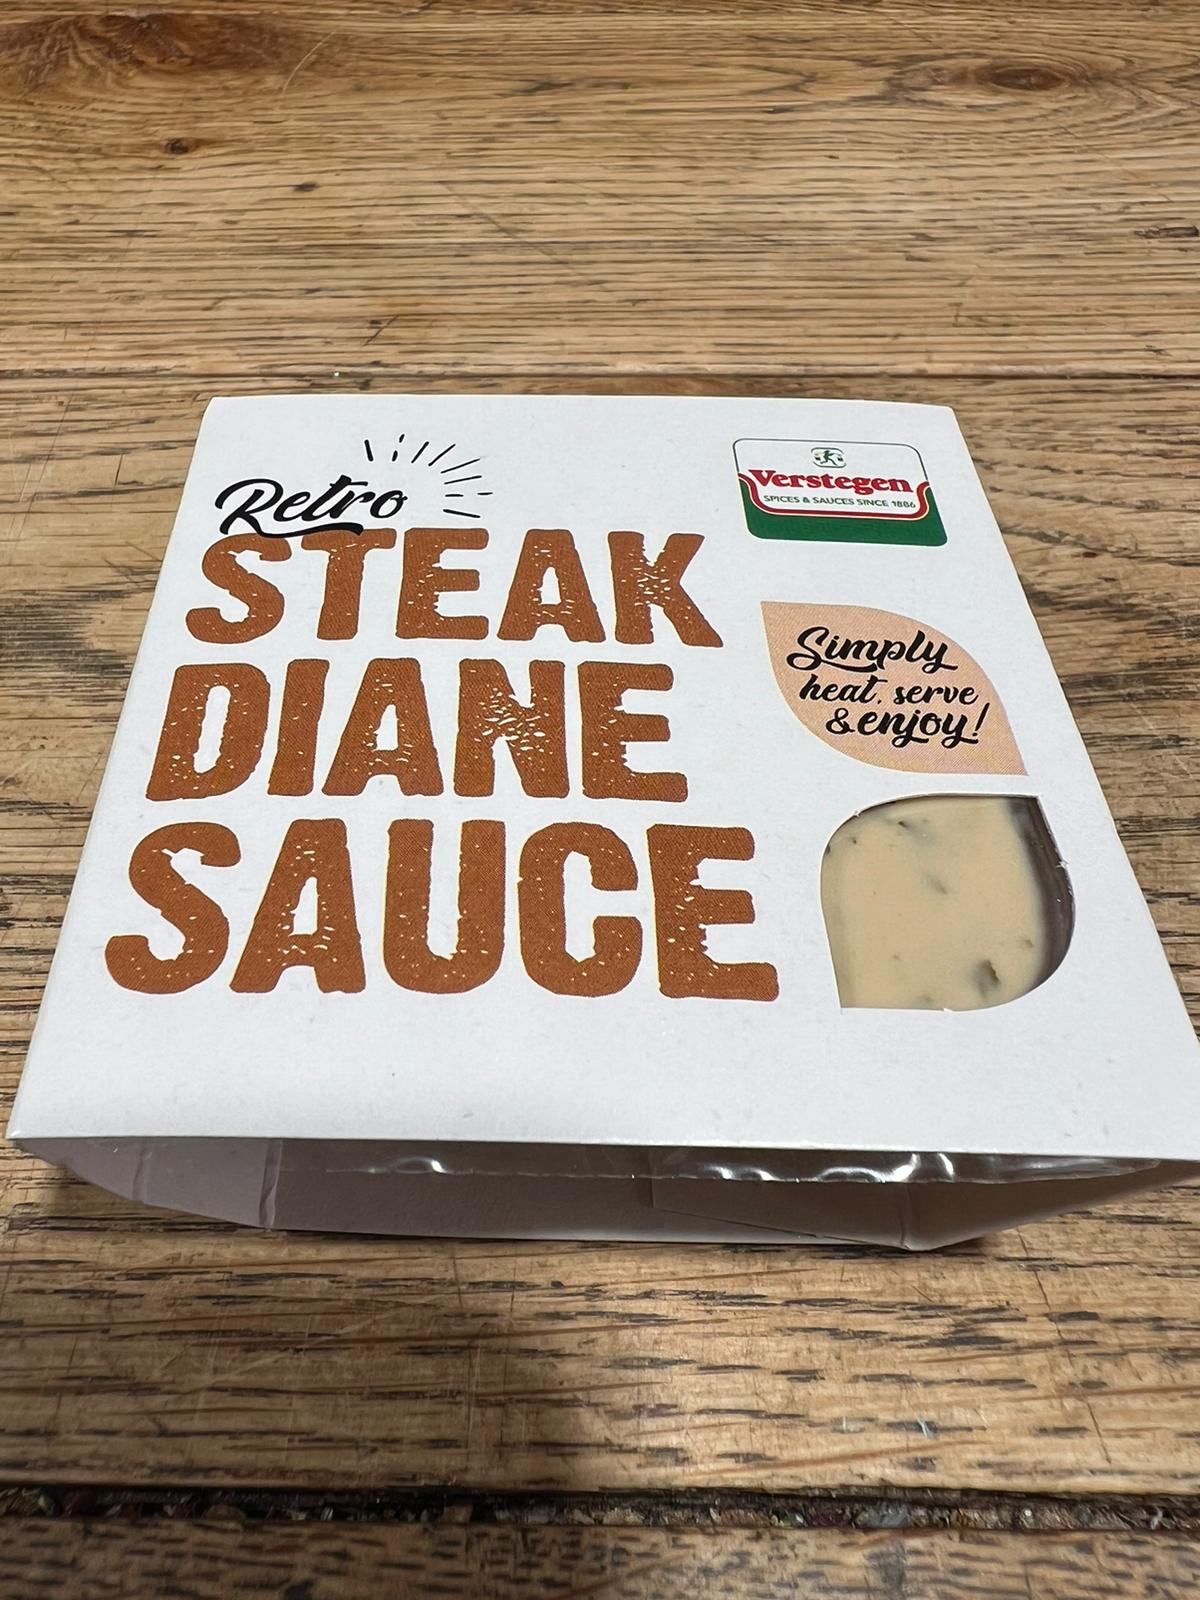 Retro Steak Diane Sauce